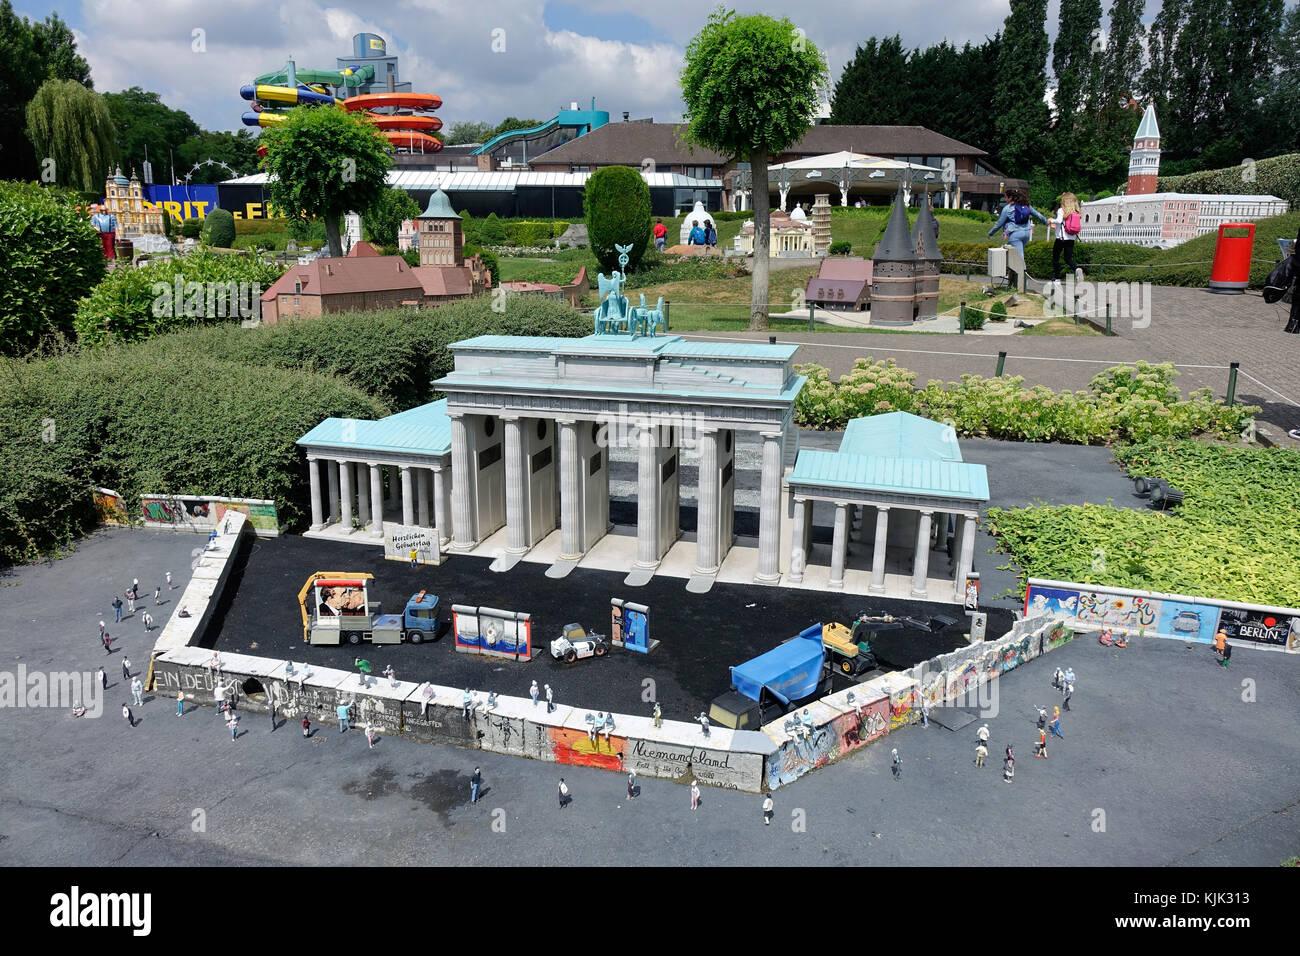 Una miniatura della Porta di Brandeburgo a Berlino, poco dopo la caduta del  muro di Berlino, presso il parco delle esposizioni di mini-europe nella  capitale belga Bruxelles, 26.06.2017. La porta di Brandeburgo